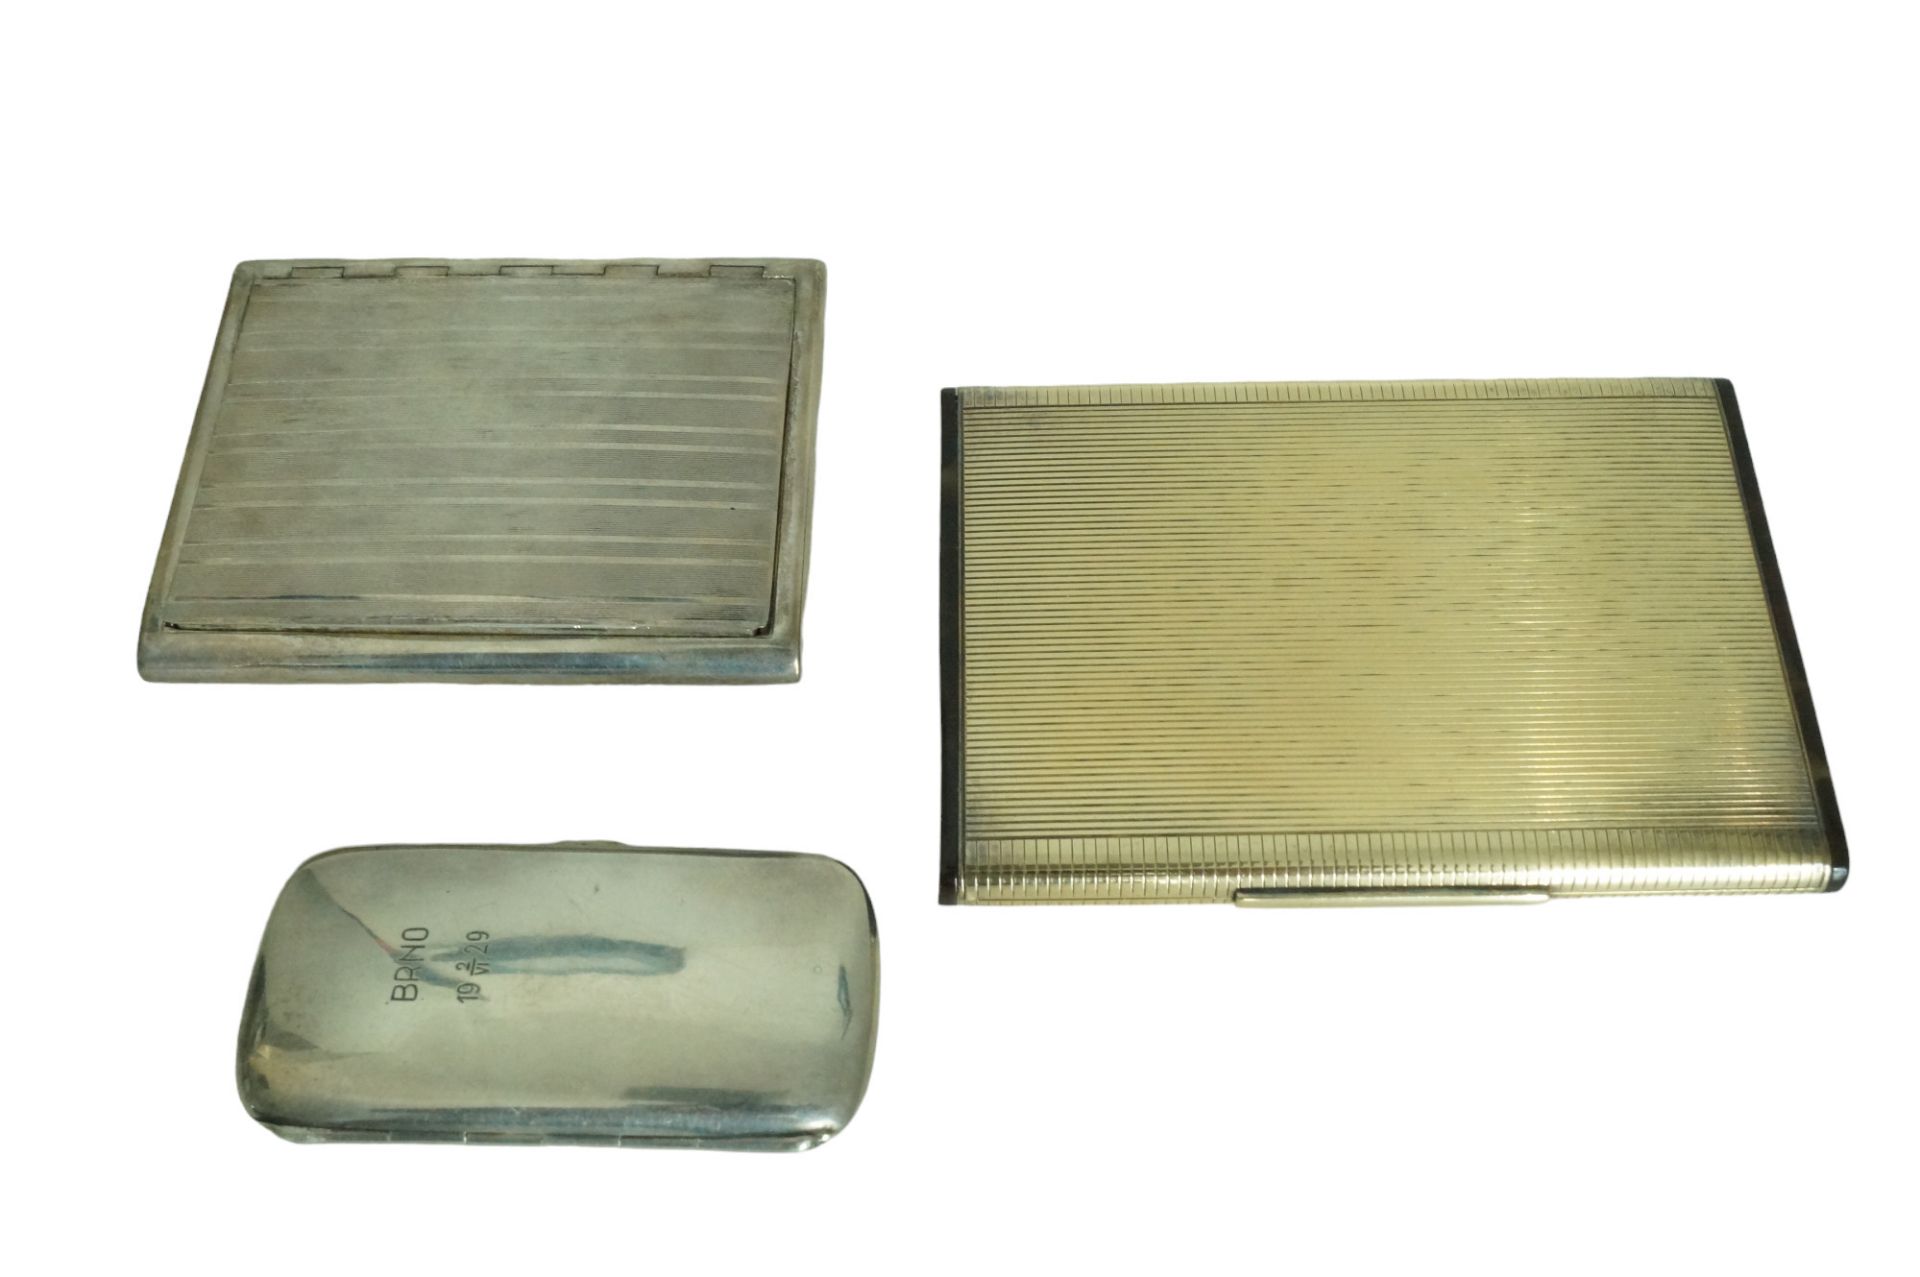 Drei Zigarettendosen unterschiedlicher Größe; teilweise Silber, die größte Dose wohl unedles Metall